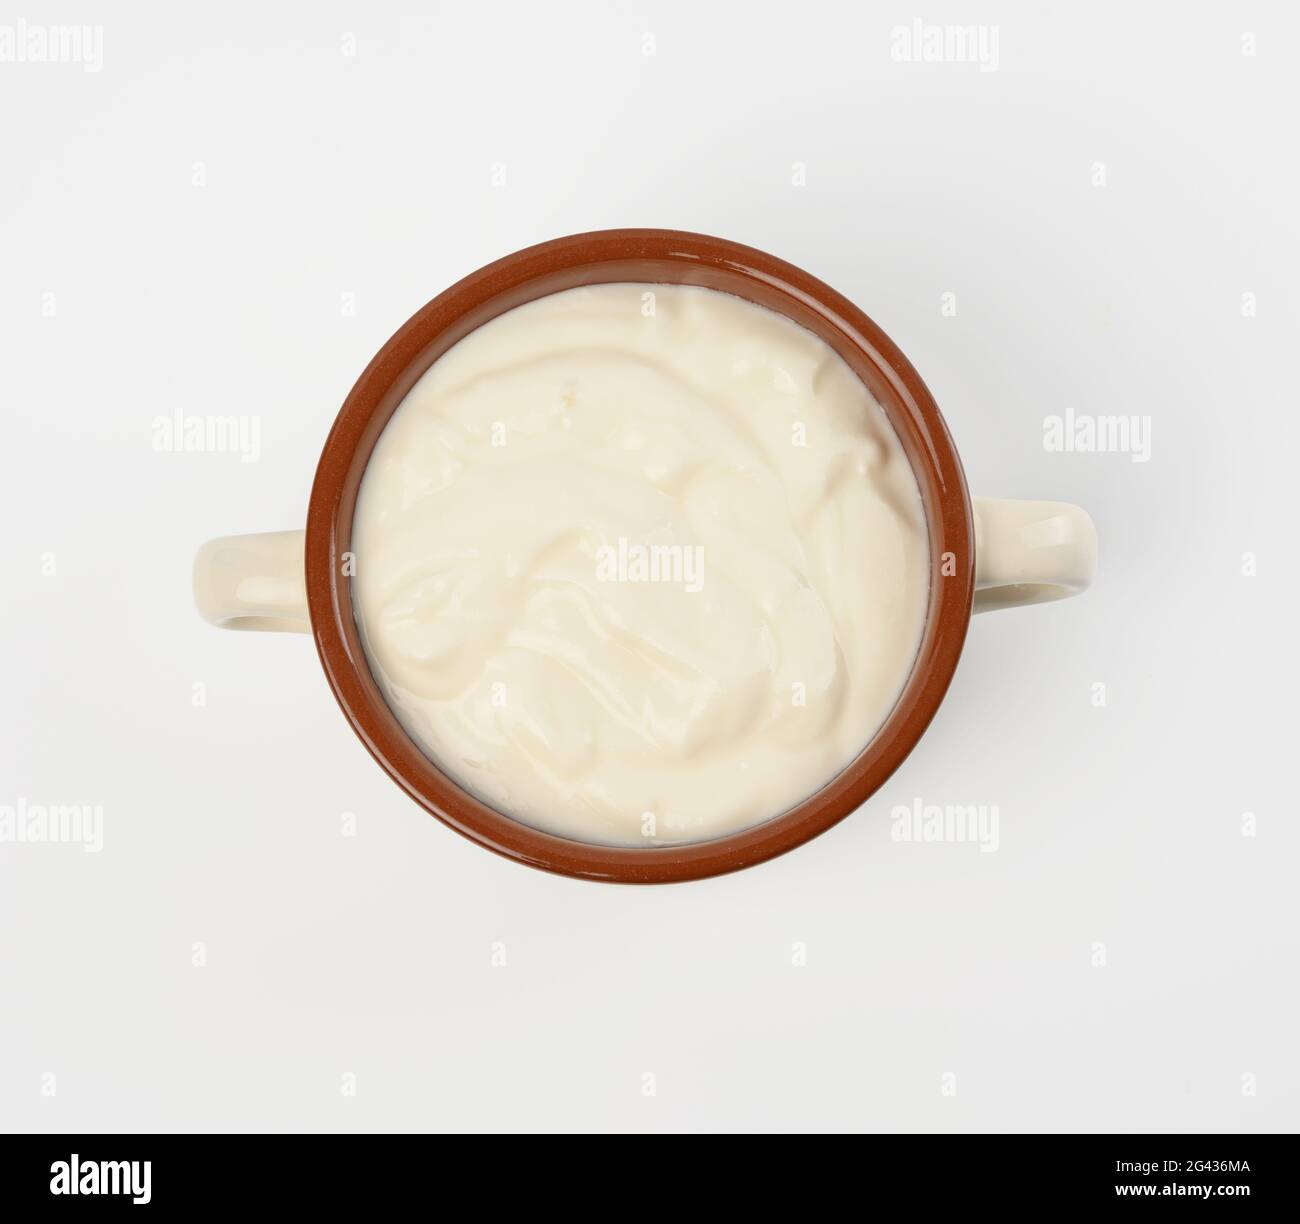 Saure Rahm in einer braunen Keramikschale auf weißem Hintergrund, fermentiertes Milchprodukt Stockfoto